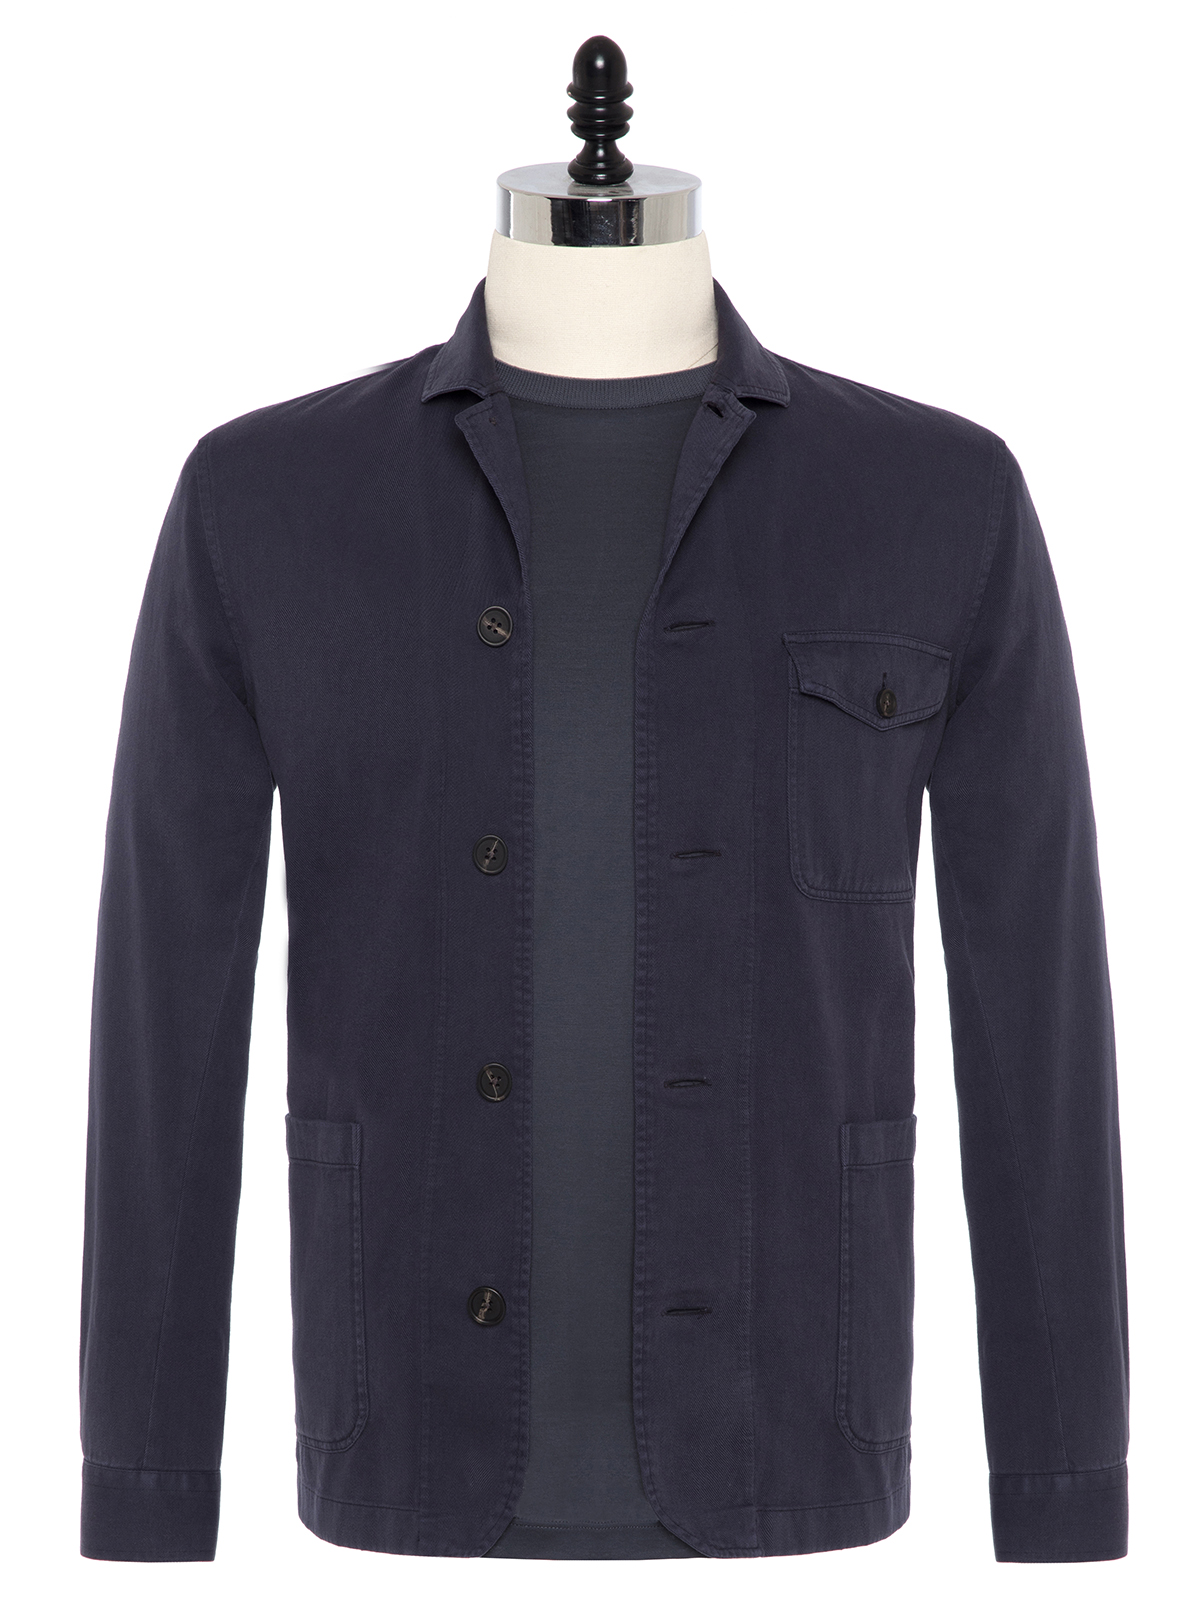 Germirli - Germirli İndigo Mavi Twill Vintage Tailor Fit Ceket Gömlek